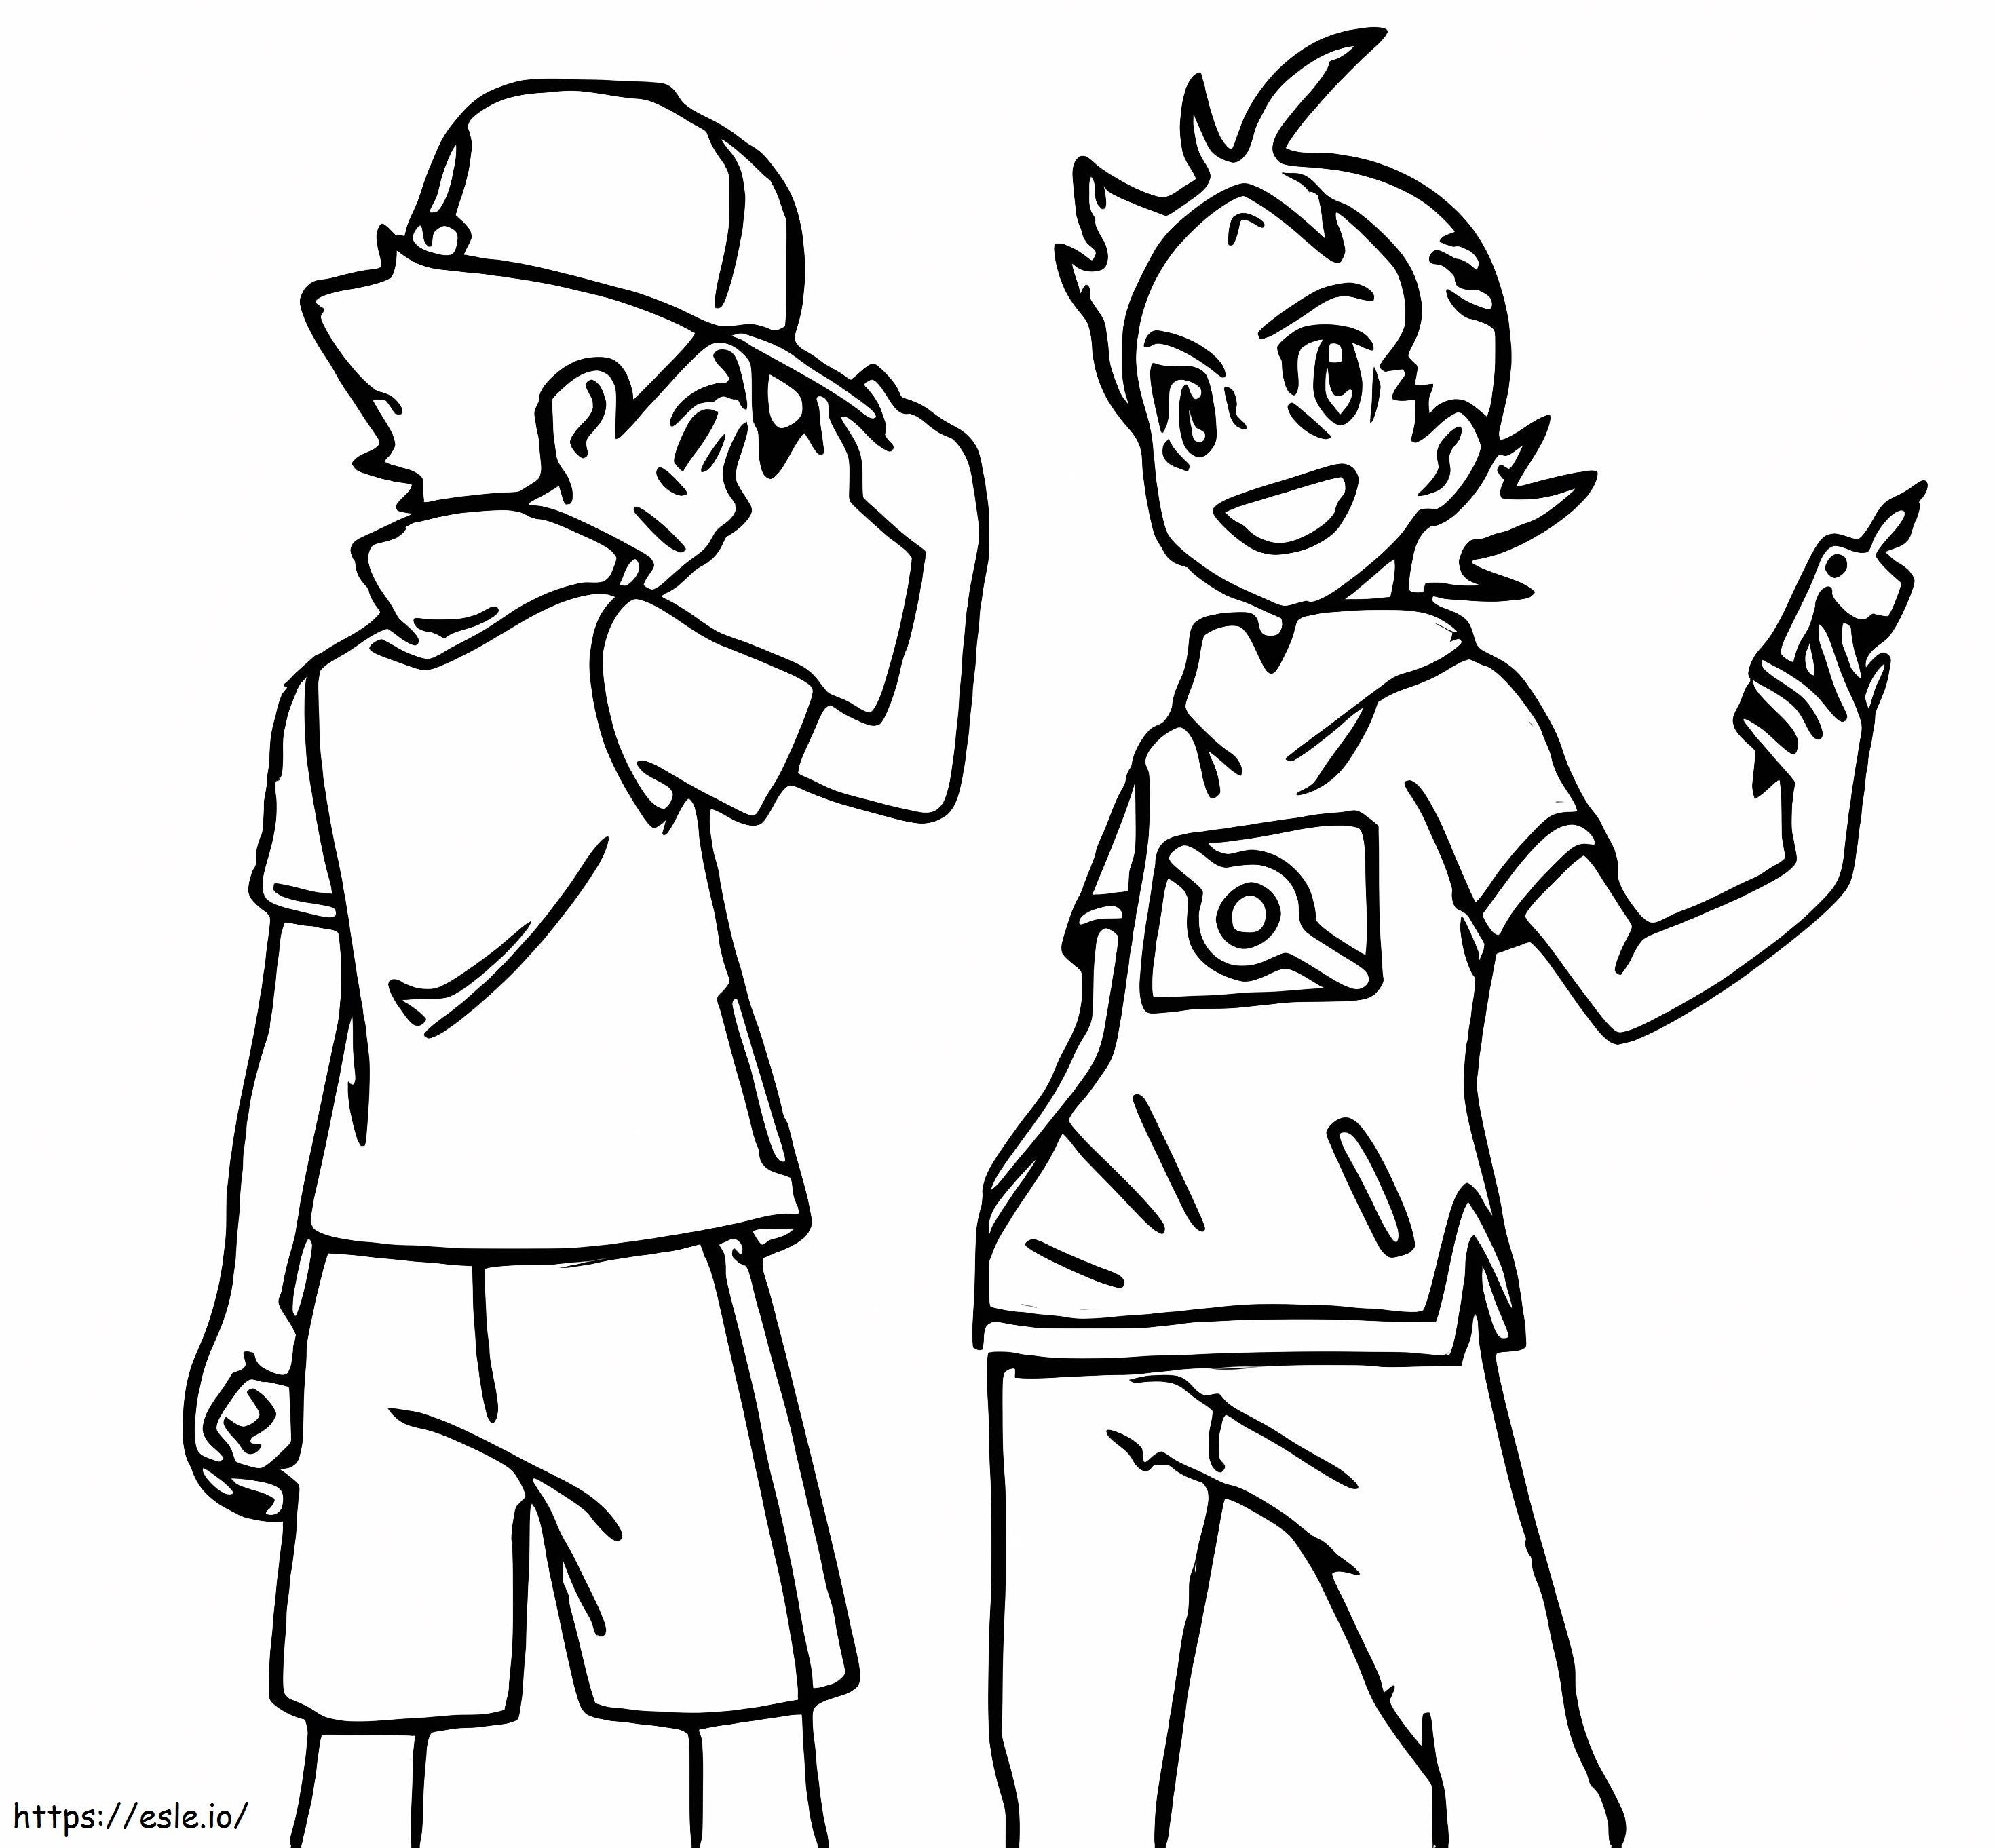 Goh e Ash para colorir